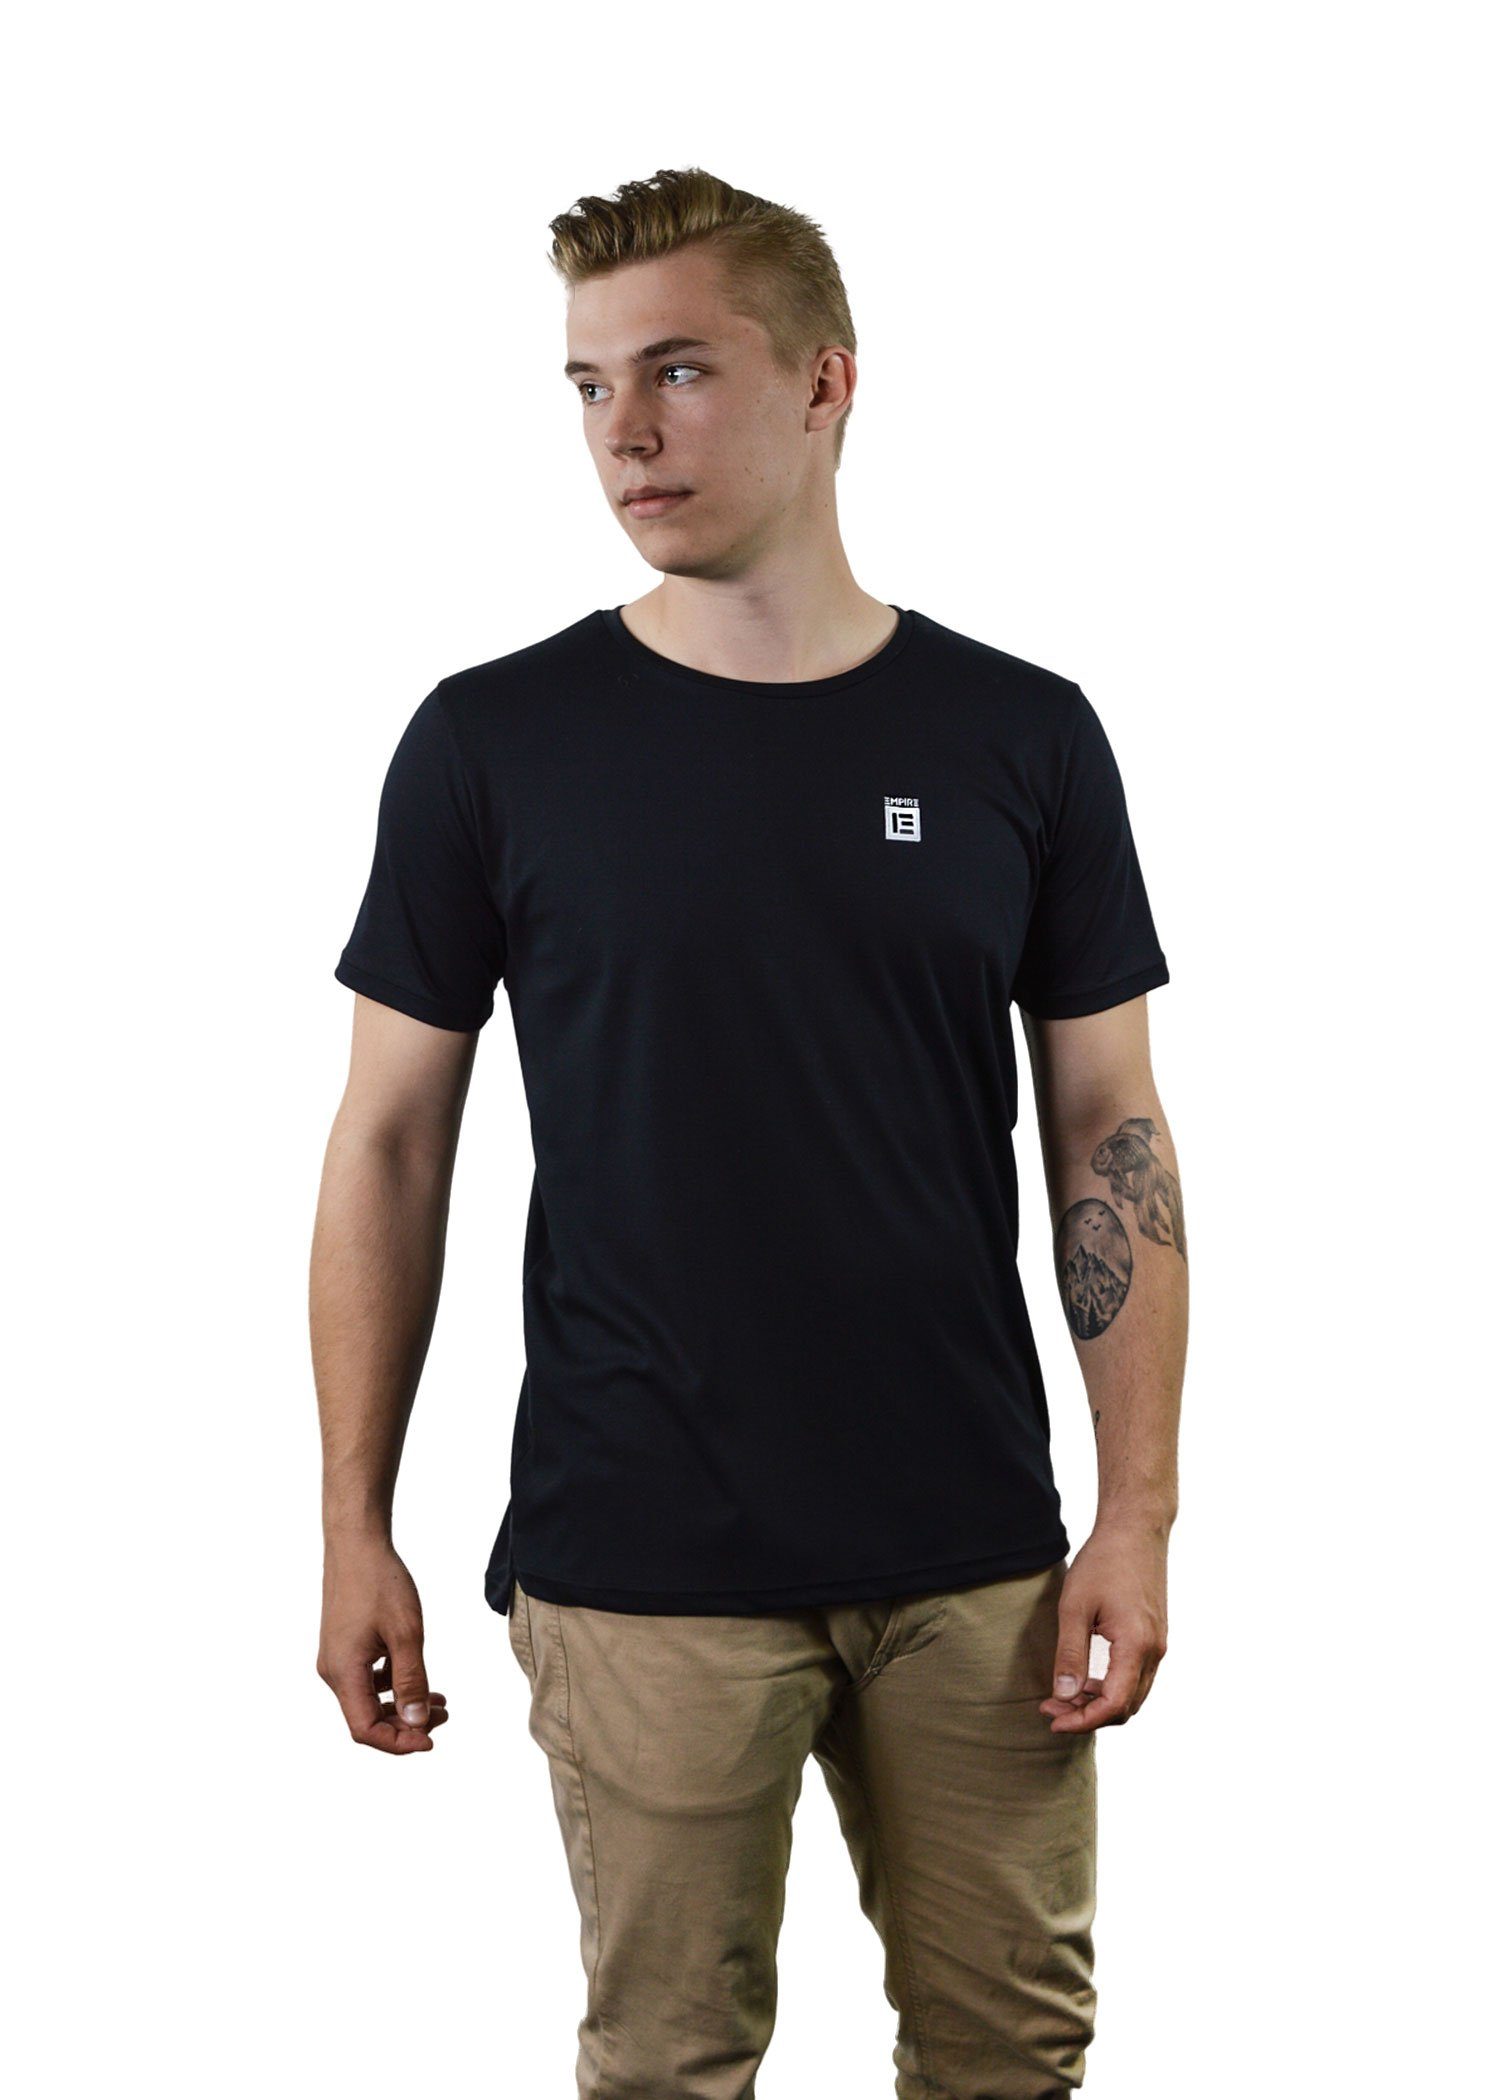 BASIC an SHIRT EMPIRE-THIRTEEN hinten schwarz den "EMPIRE" vorne T-Shirt T-Shirt, Seiten, Schlitze Logostickerei, als länger MEN